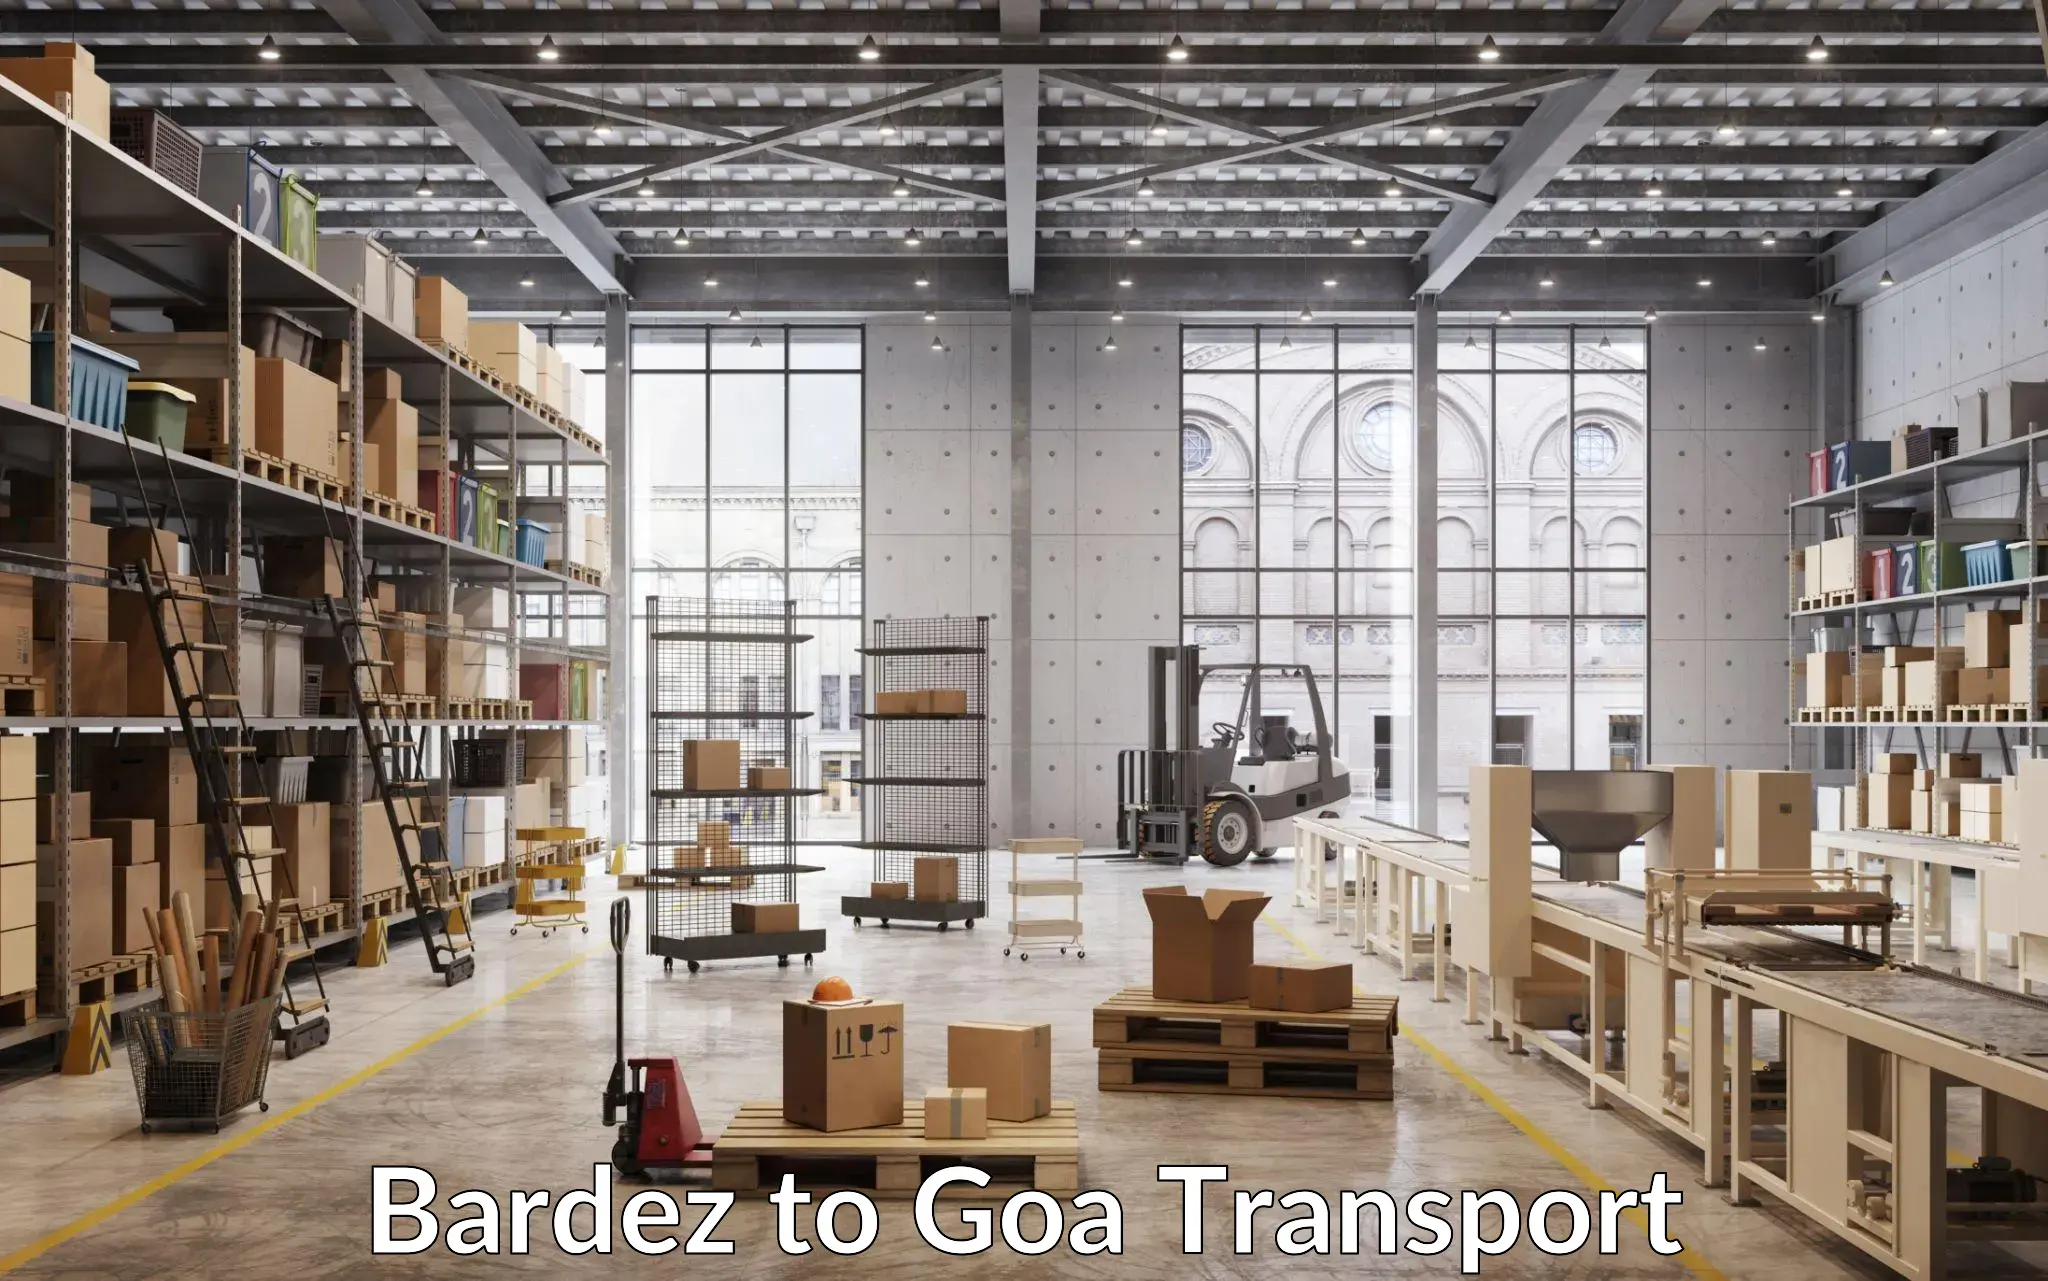 Pick up transport service Bardez to South Goa